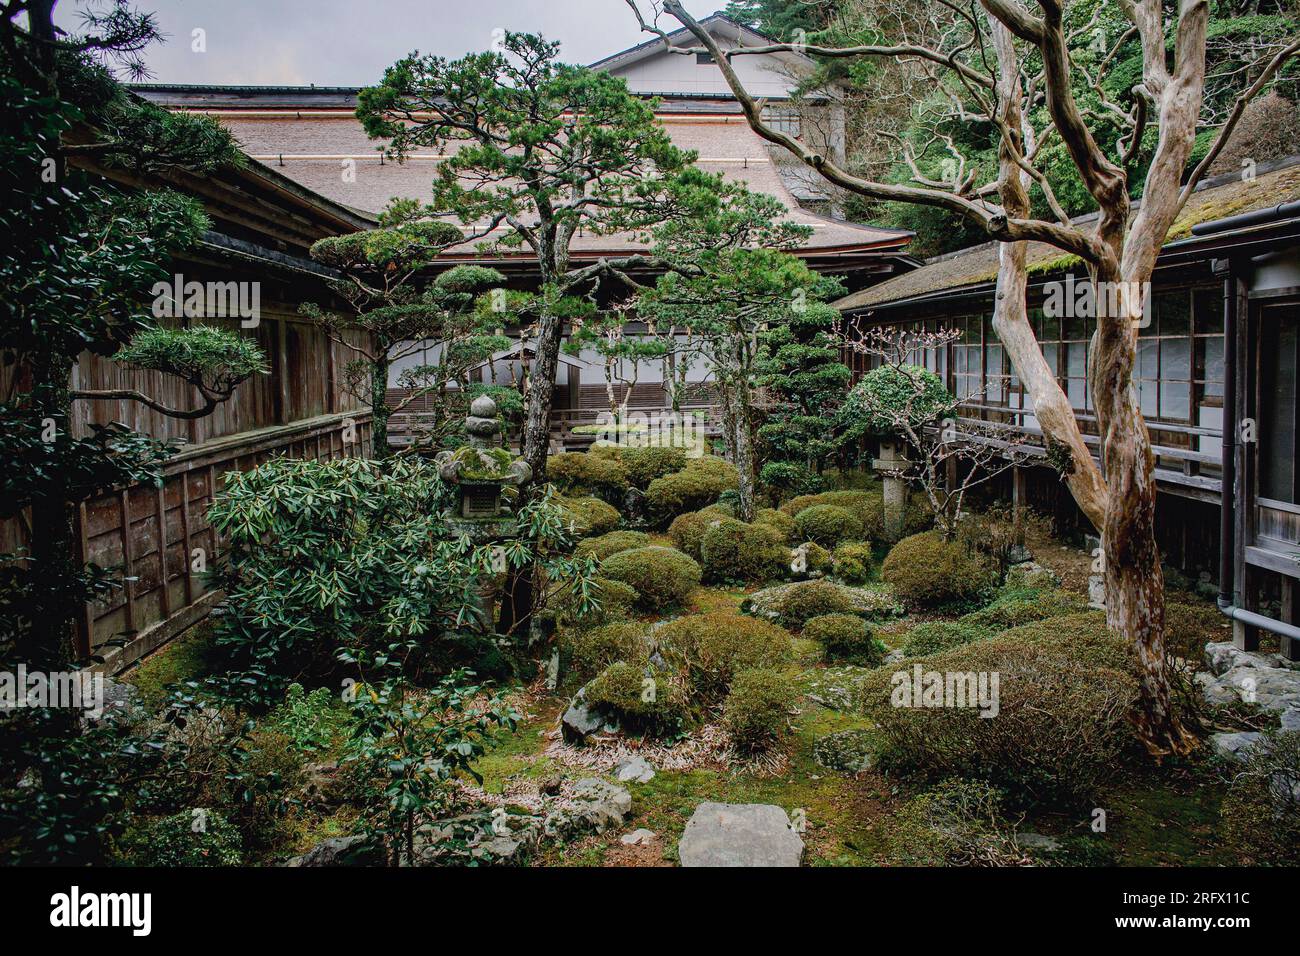 Japanese garden in the Rengejoin Temple in Koyasan, Mount Koya, Japan Stock Photo